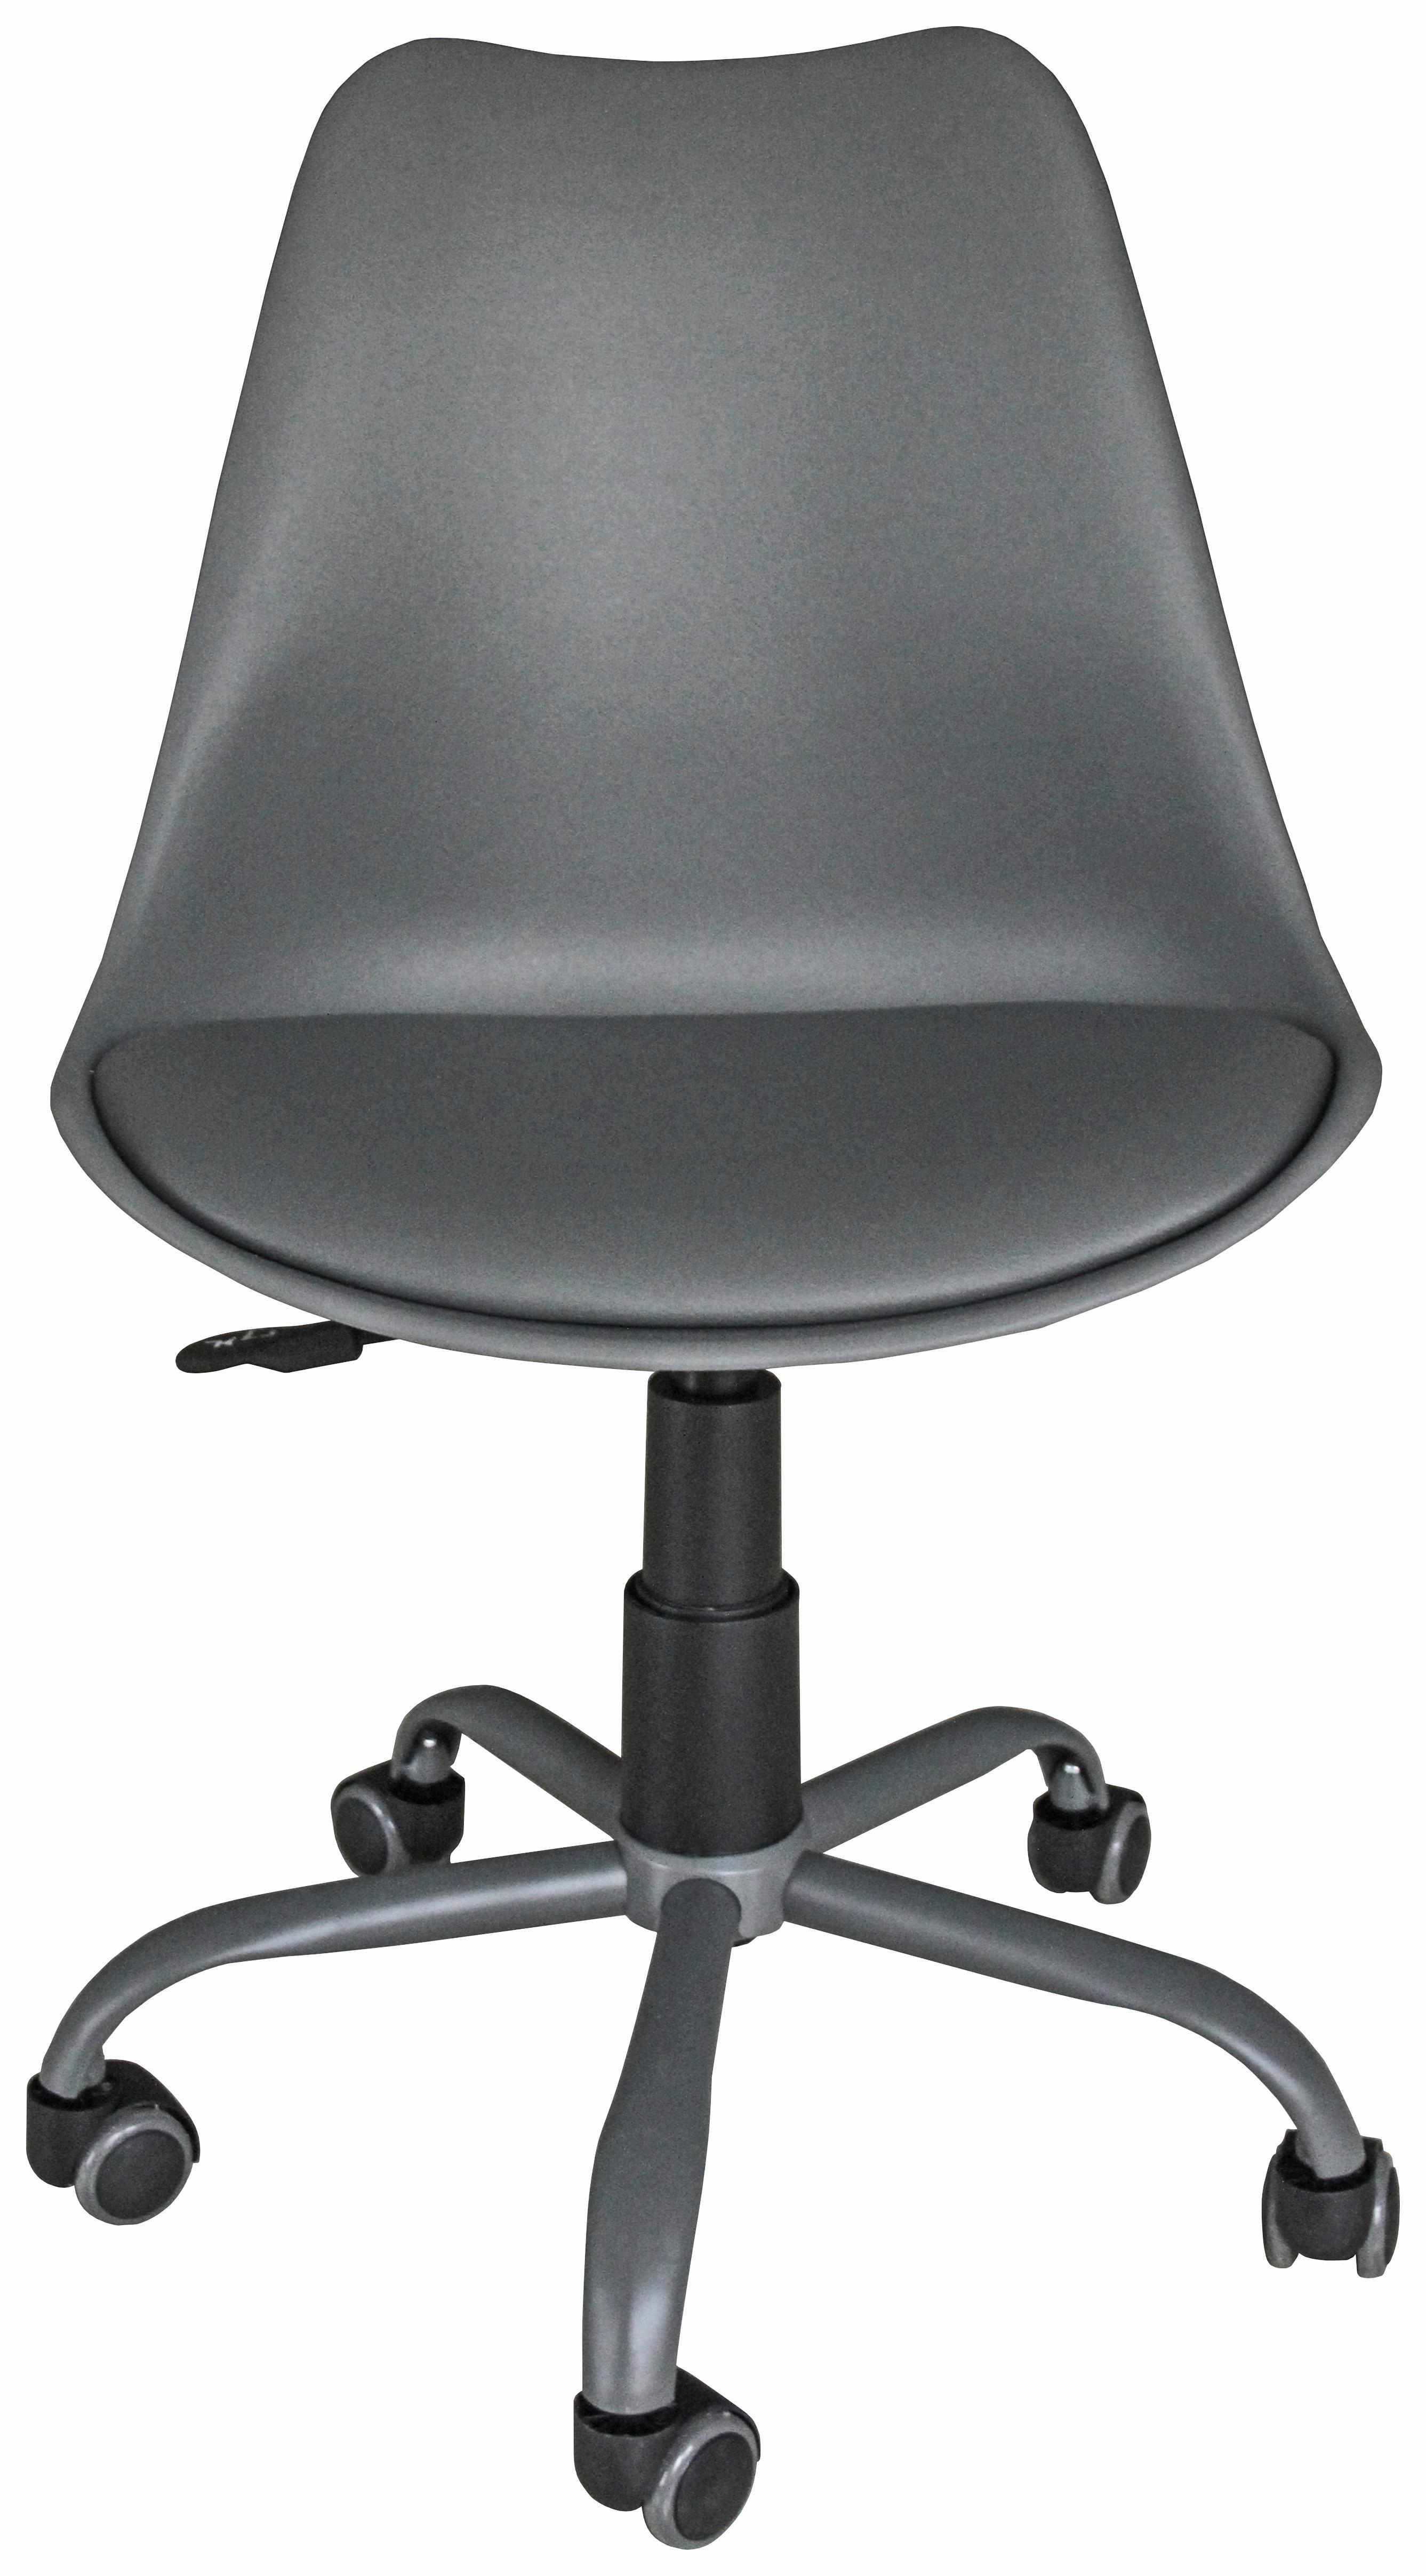 Otočná Židle Anna - šedá/černá, Moderní, kov/textil (55/79-87/48,5cm) - Modern Living